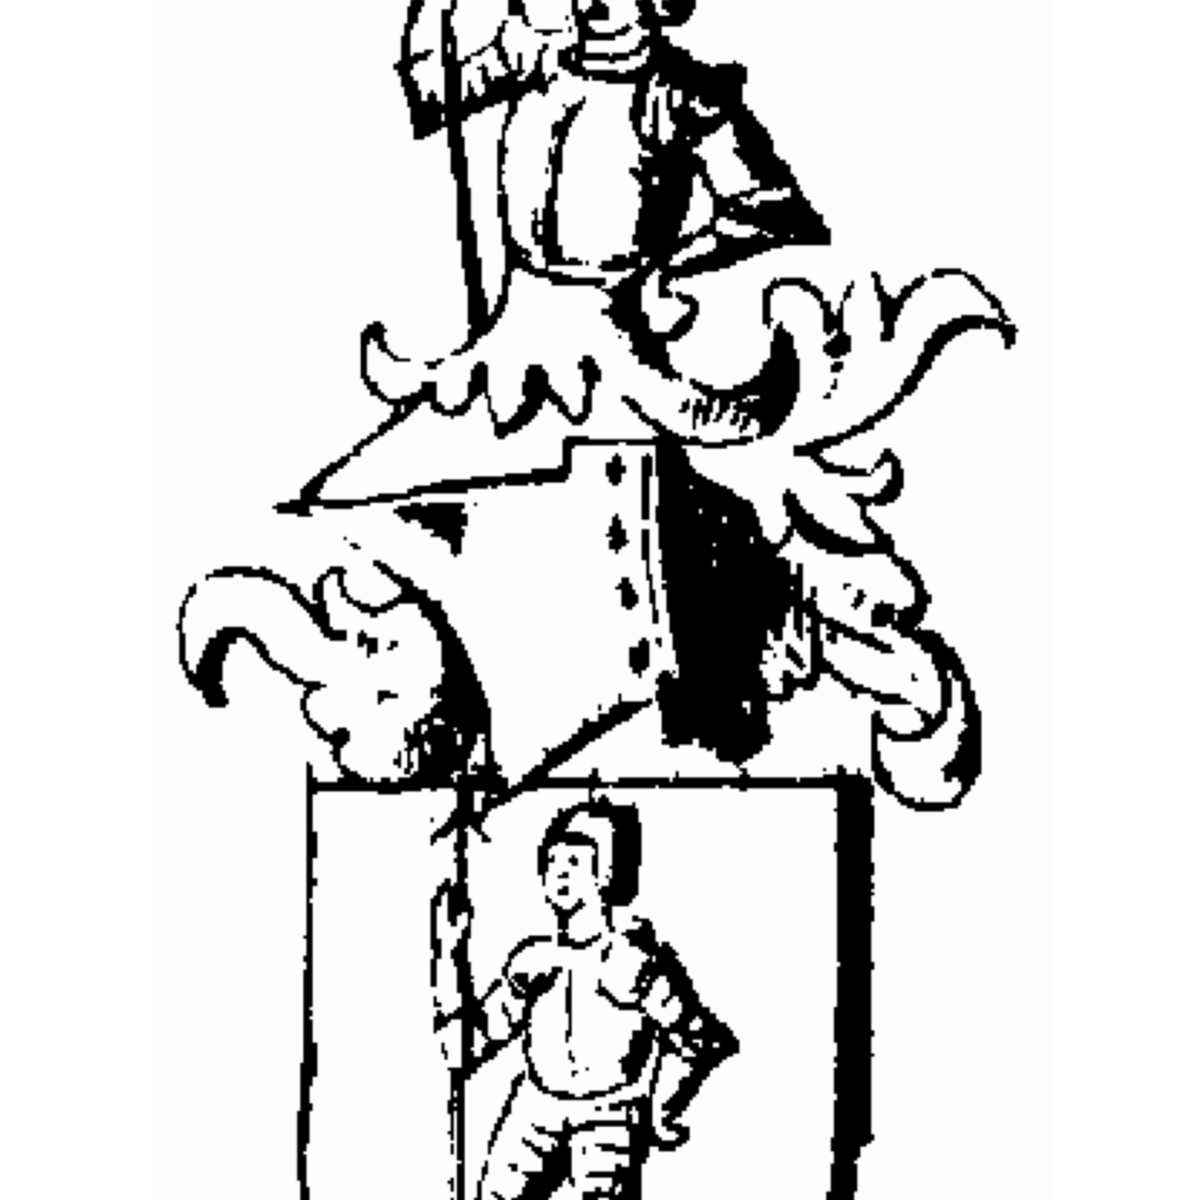 Wappen der Familie Torner